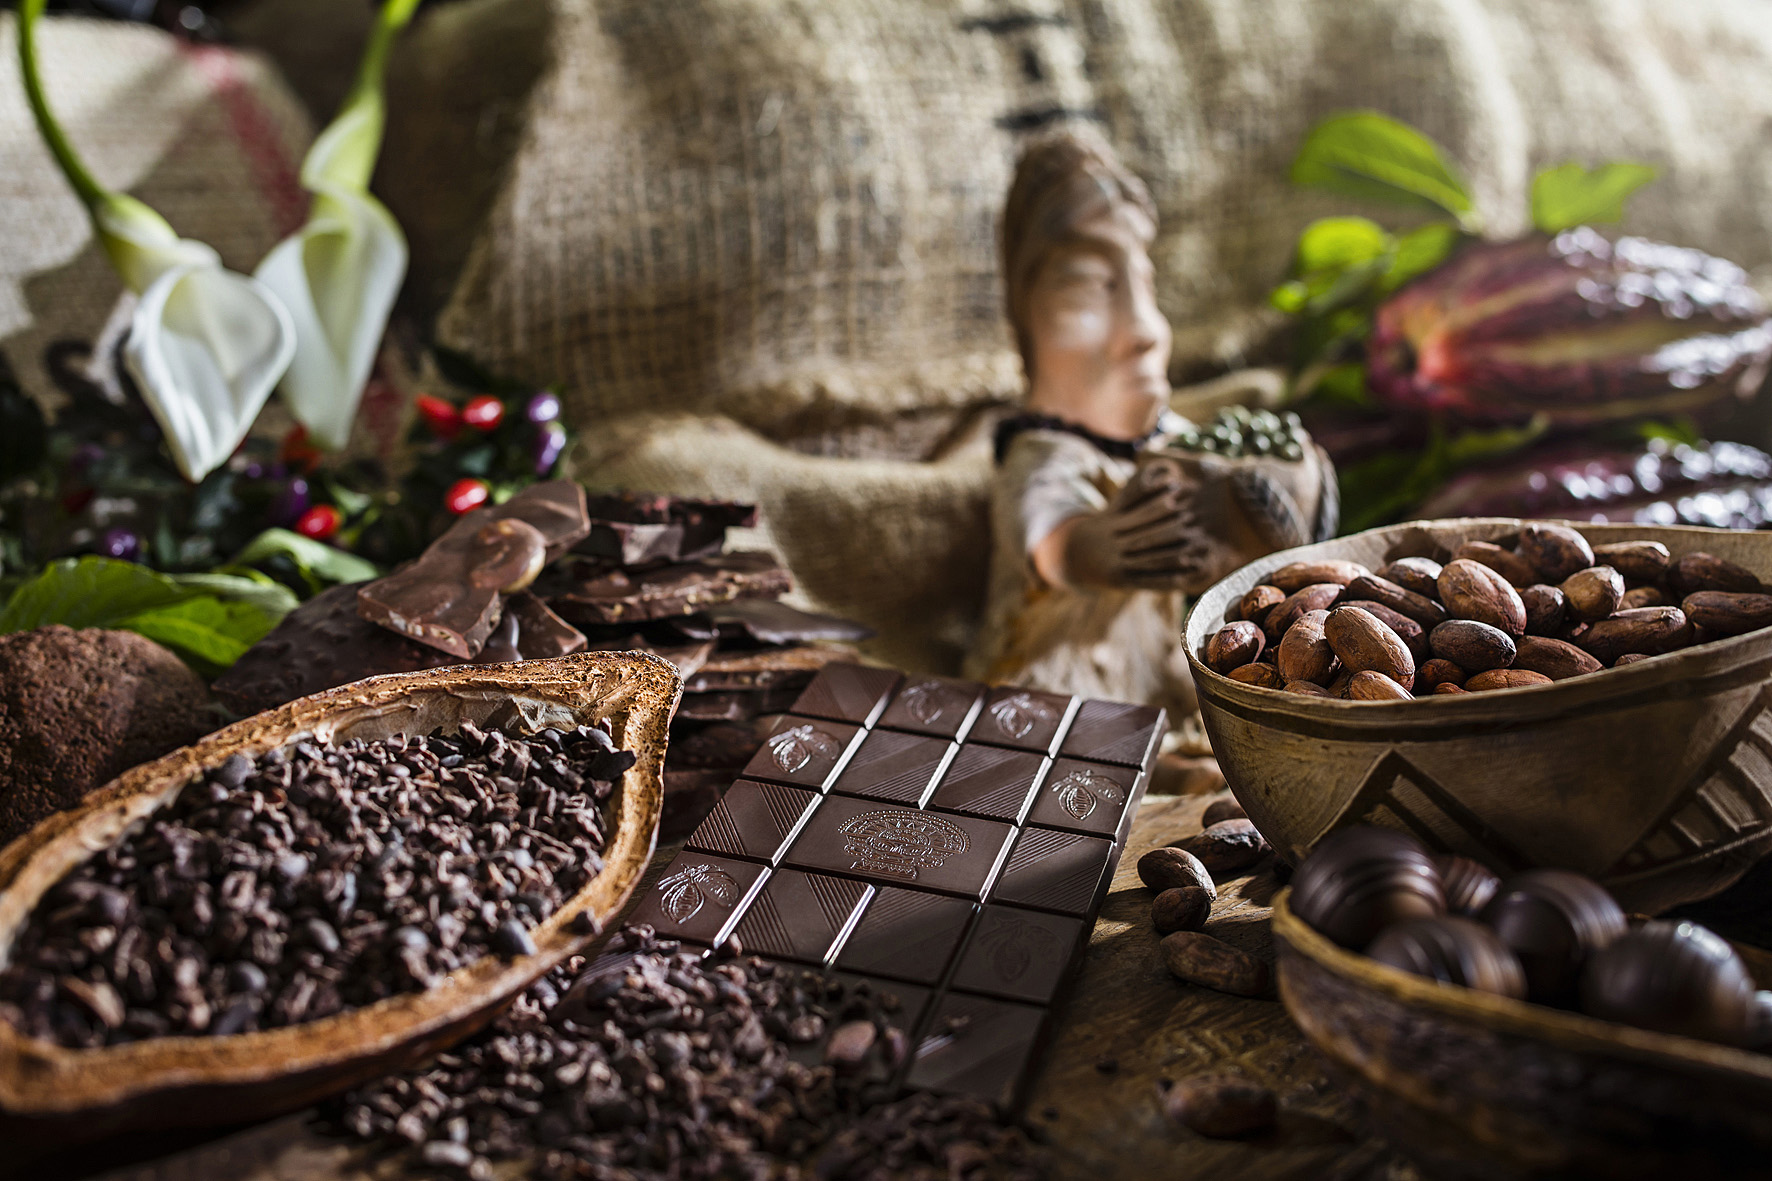 90 Min. Schokoladen-Workshop und -Tasting inkl. mexikanische Trinkschokolade für 1 Person bei Soirée Chocolat